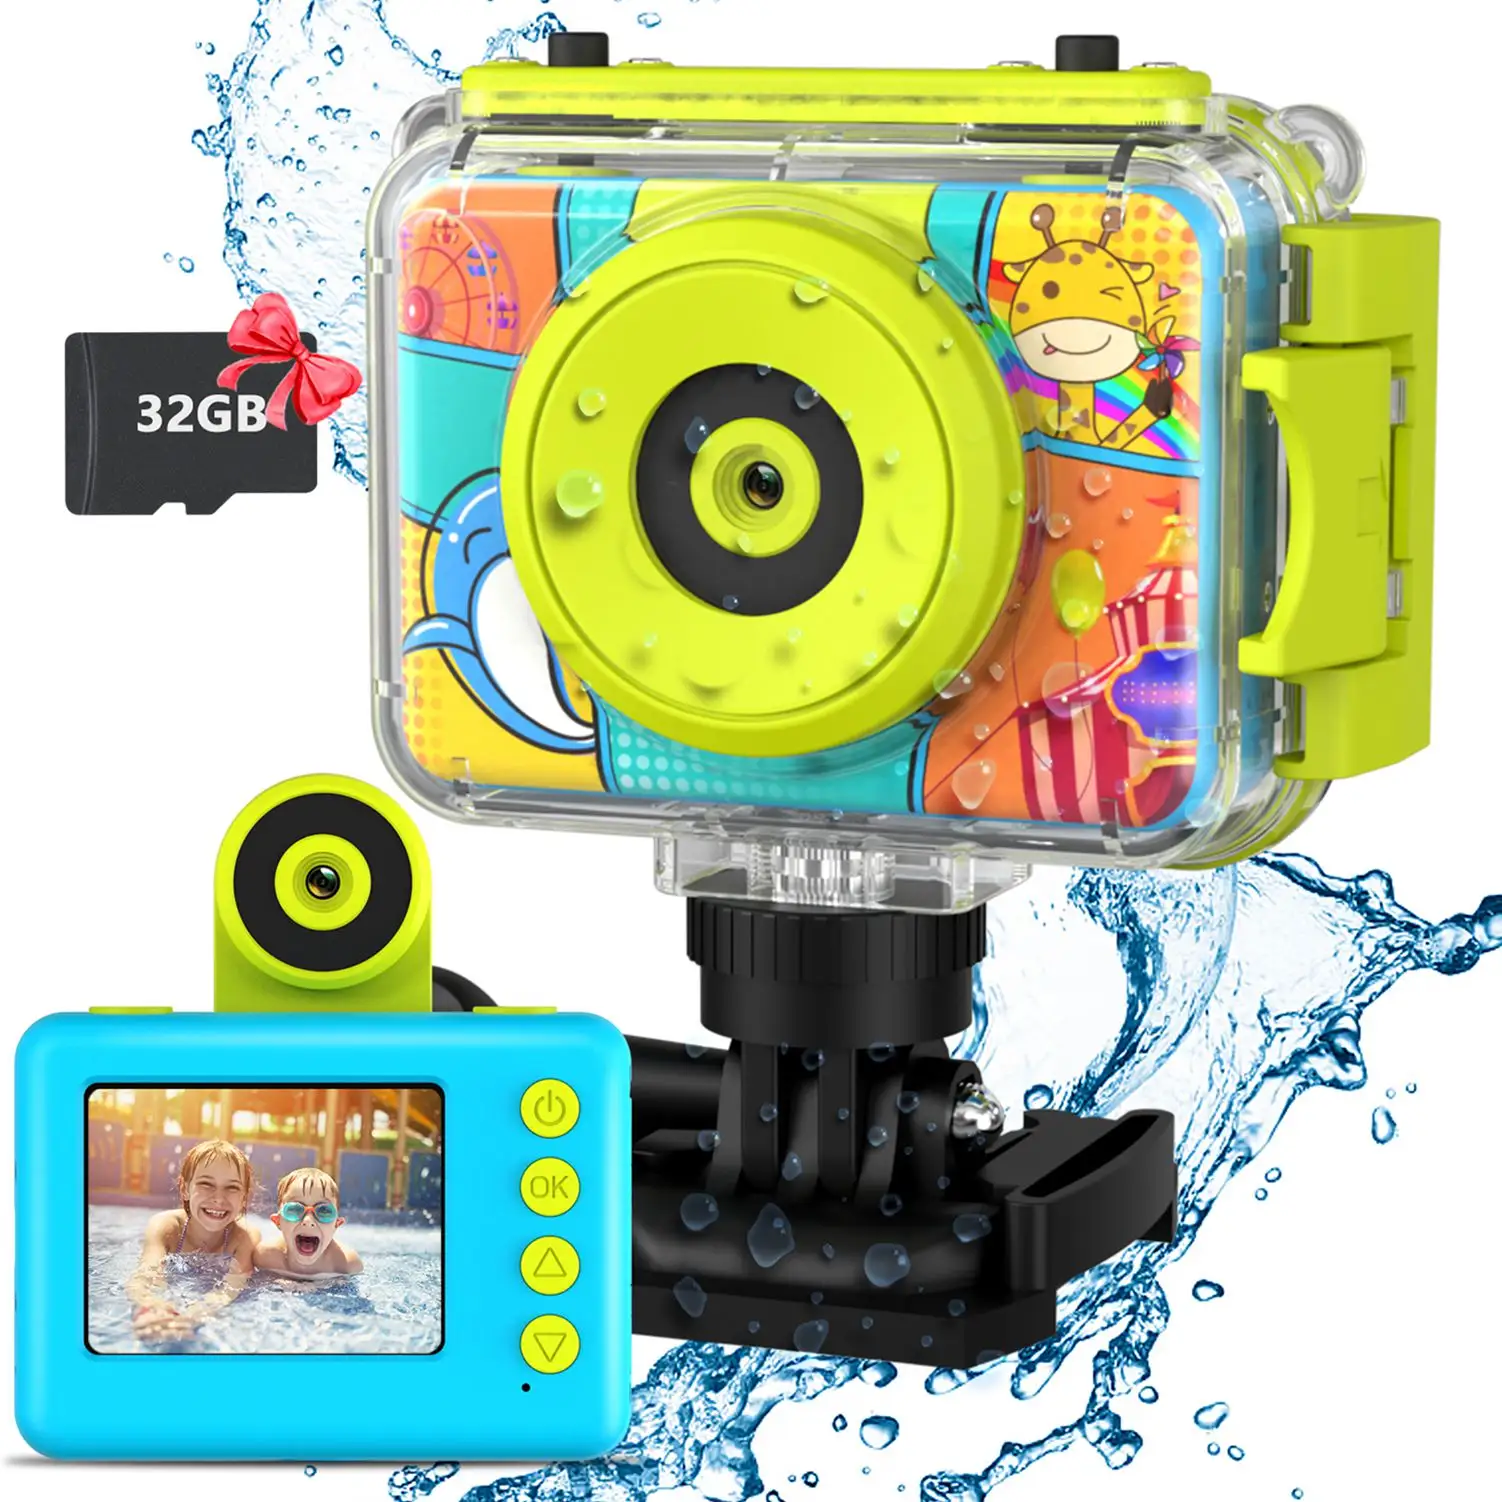 Factory Price Digital Kids Camera Waterproof 1080P Video Selfie Camera Kids Camera for Kids Birthday Gifts